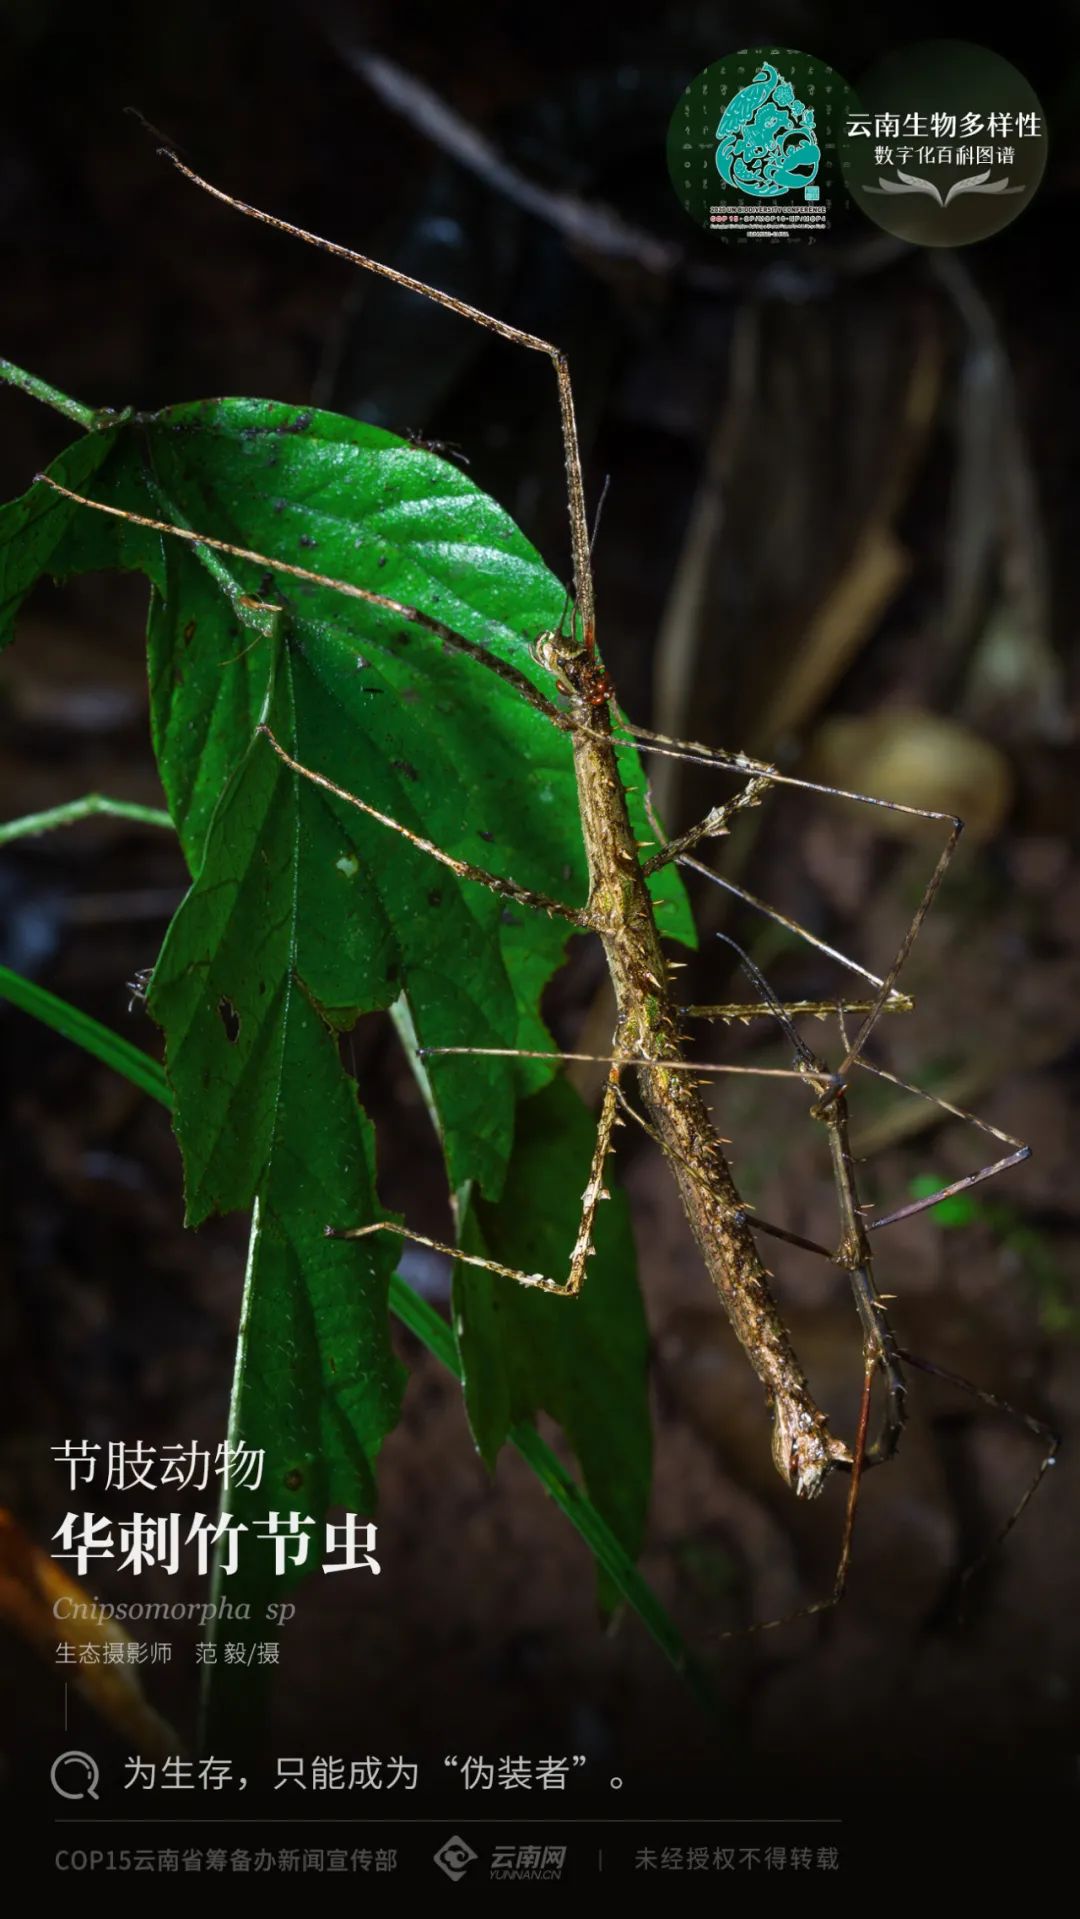 【云南生物多样性数字化百科图谱】节肢动物·华刺竹节虫:为生存,只能